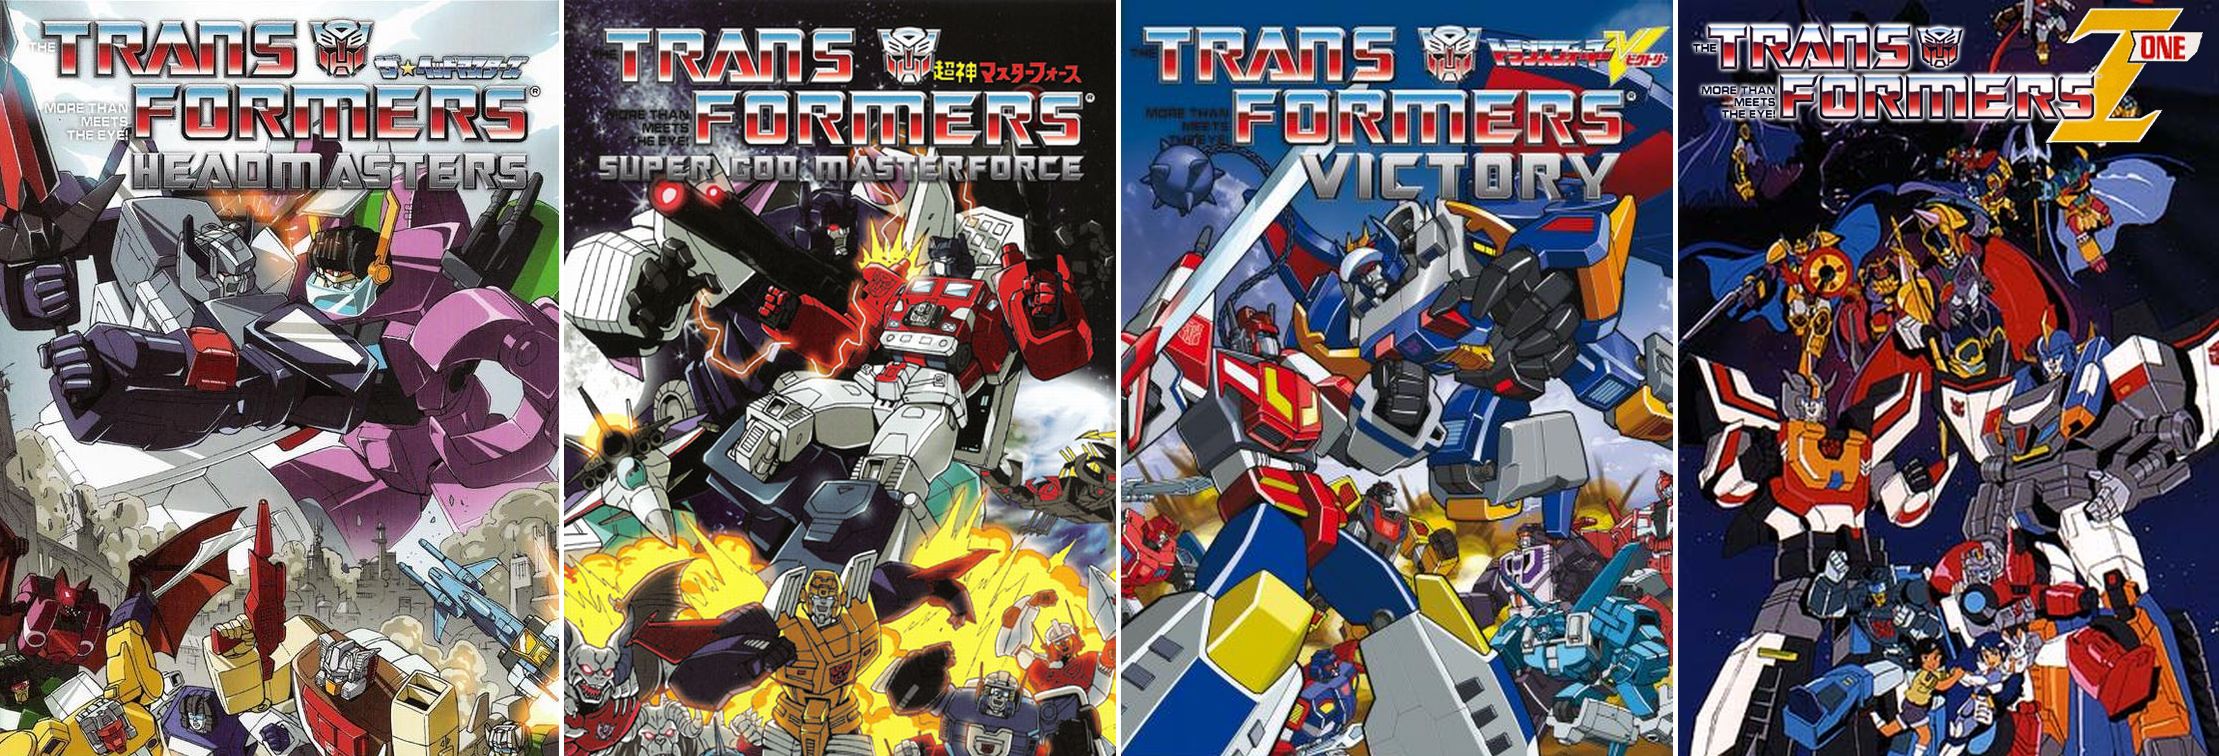 Saga Transformers  História dos Filmes, Explosões, Loucuragem e